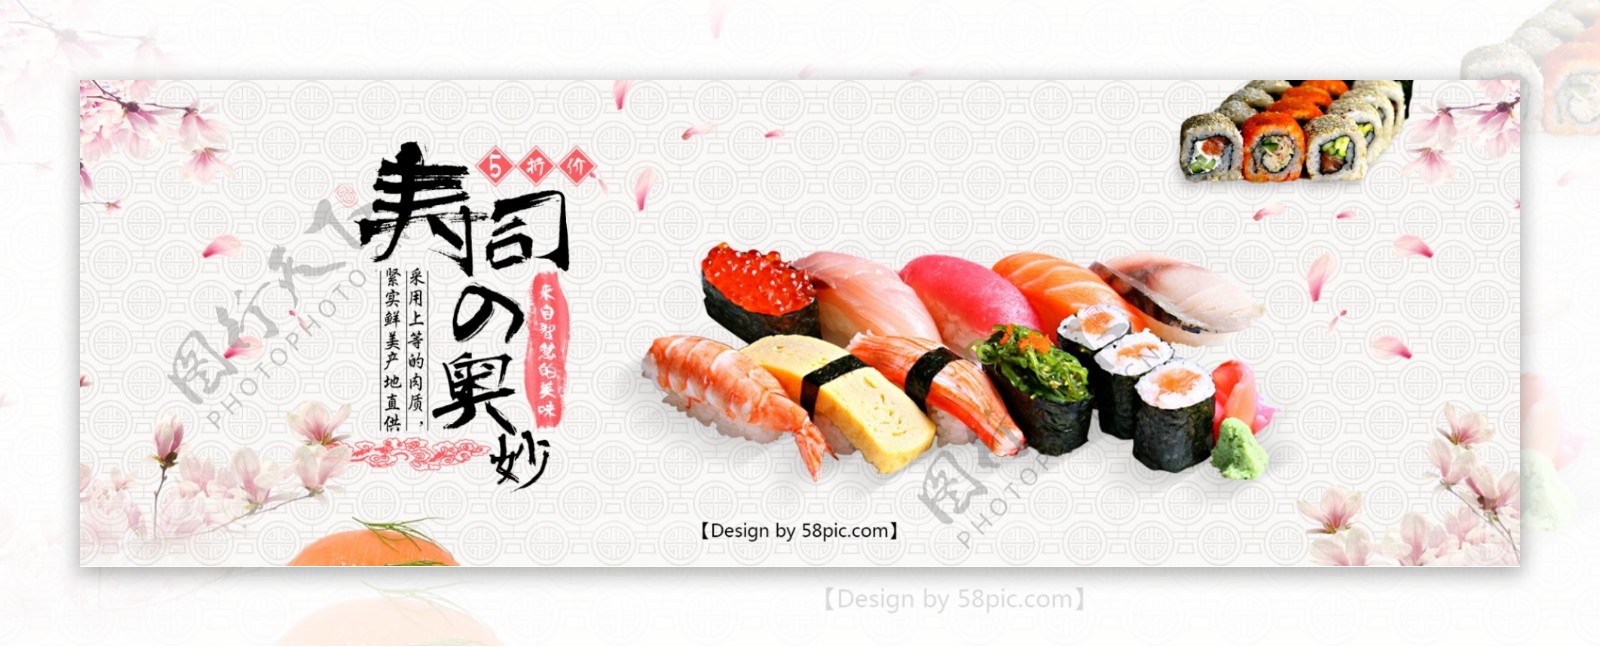 淘宝美食日式寿司全屏海报PSD模版banner